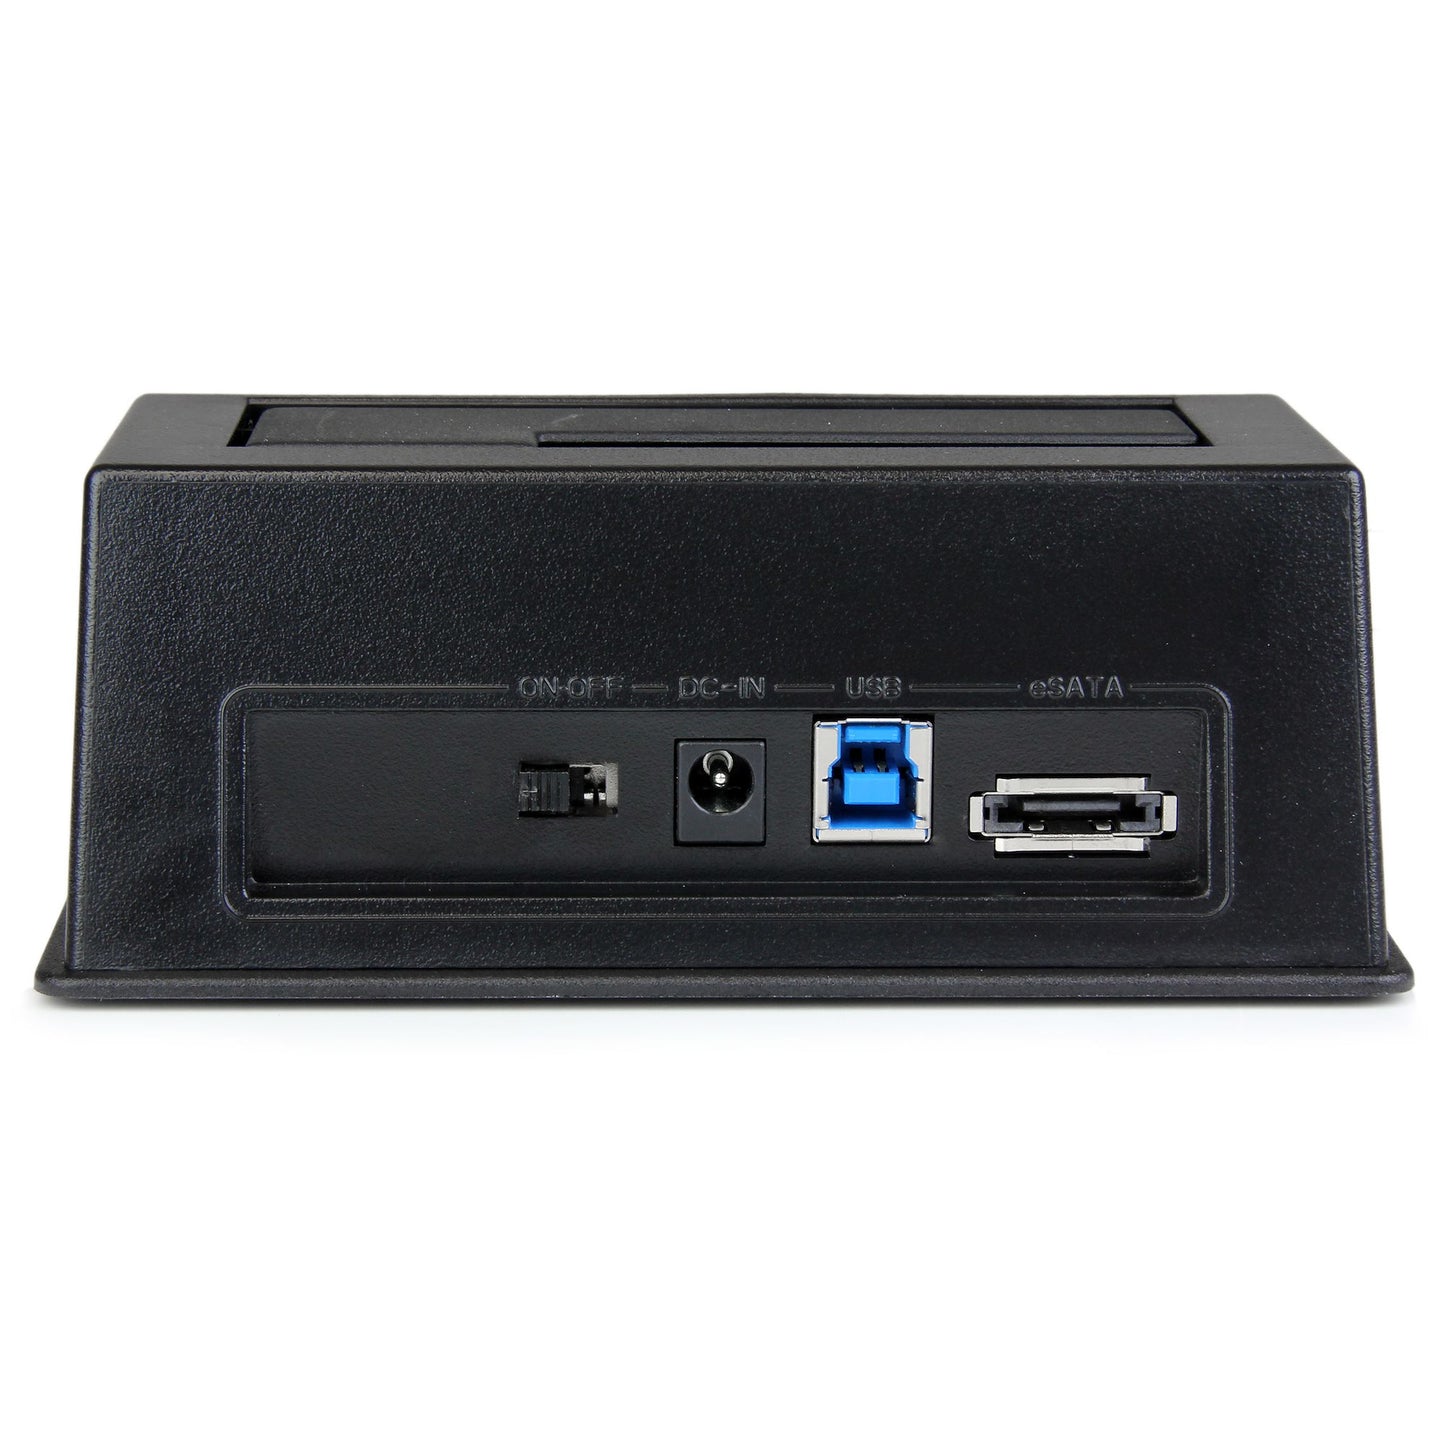 STARTECH CONSIG DOCKING STATION USB 3.0 CARR UASP PARA DISCO SATA 2.5 3.5 .